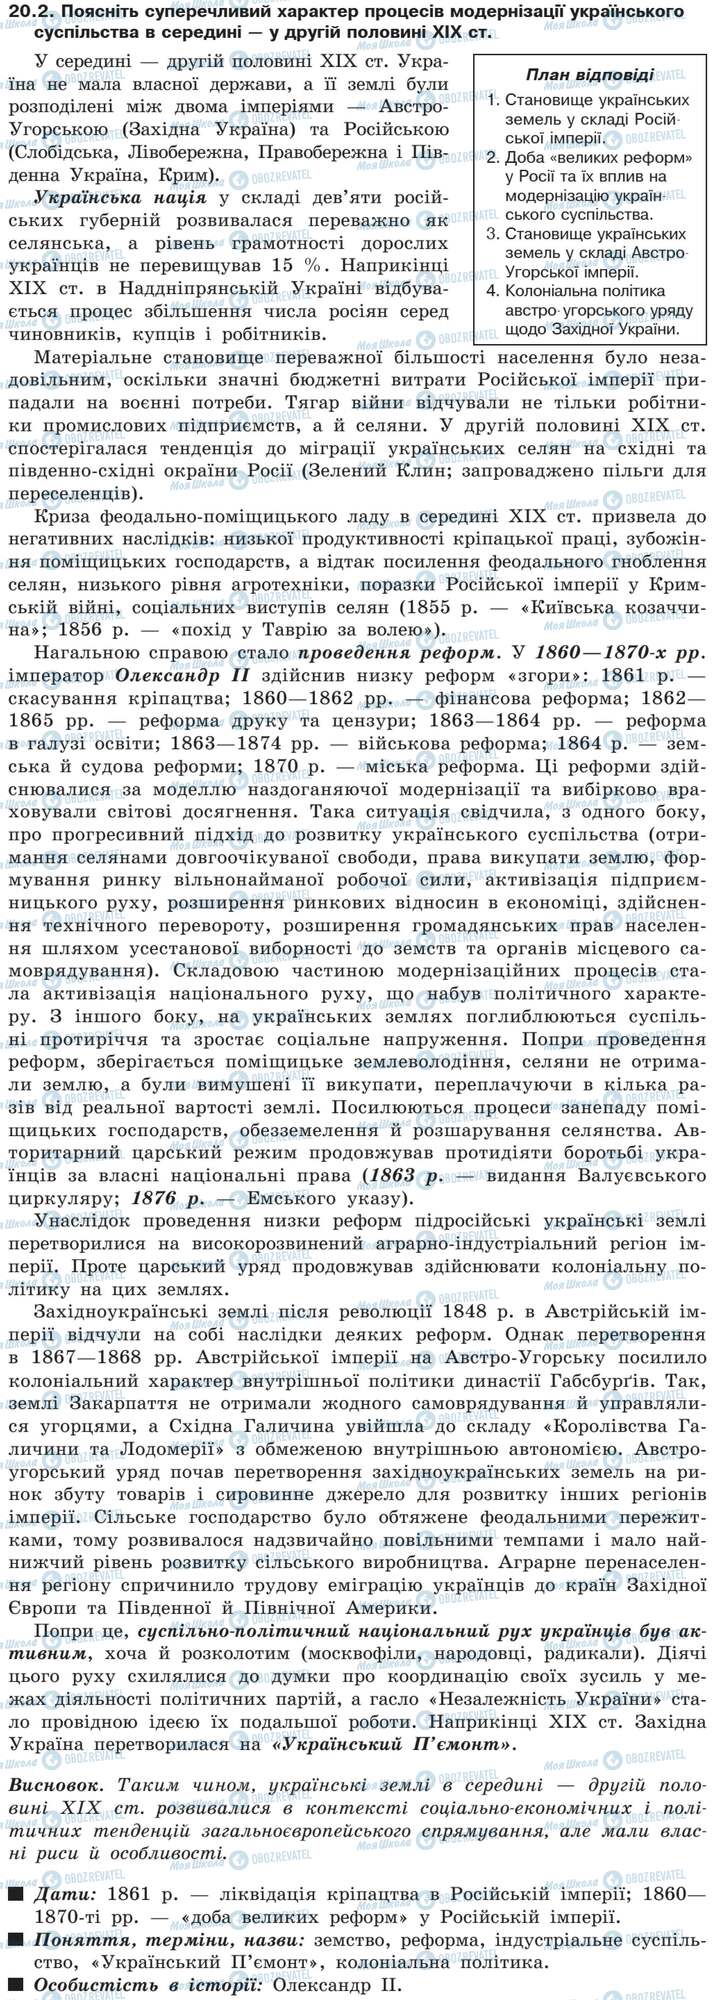 ДПА История Украины 9 класс страница 20.2